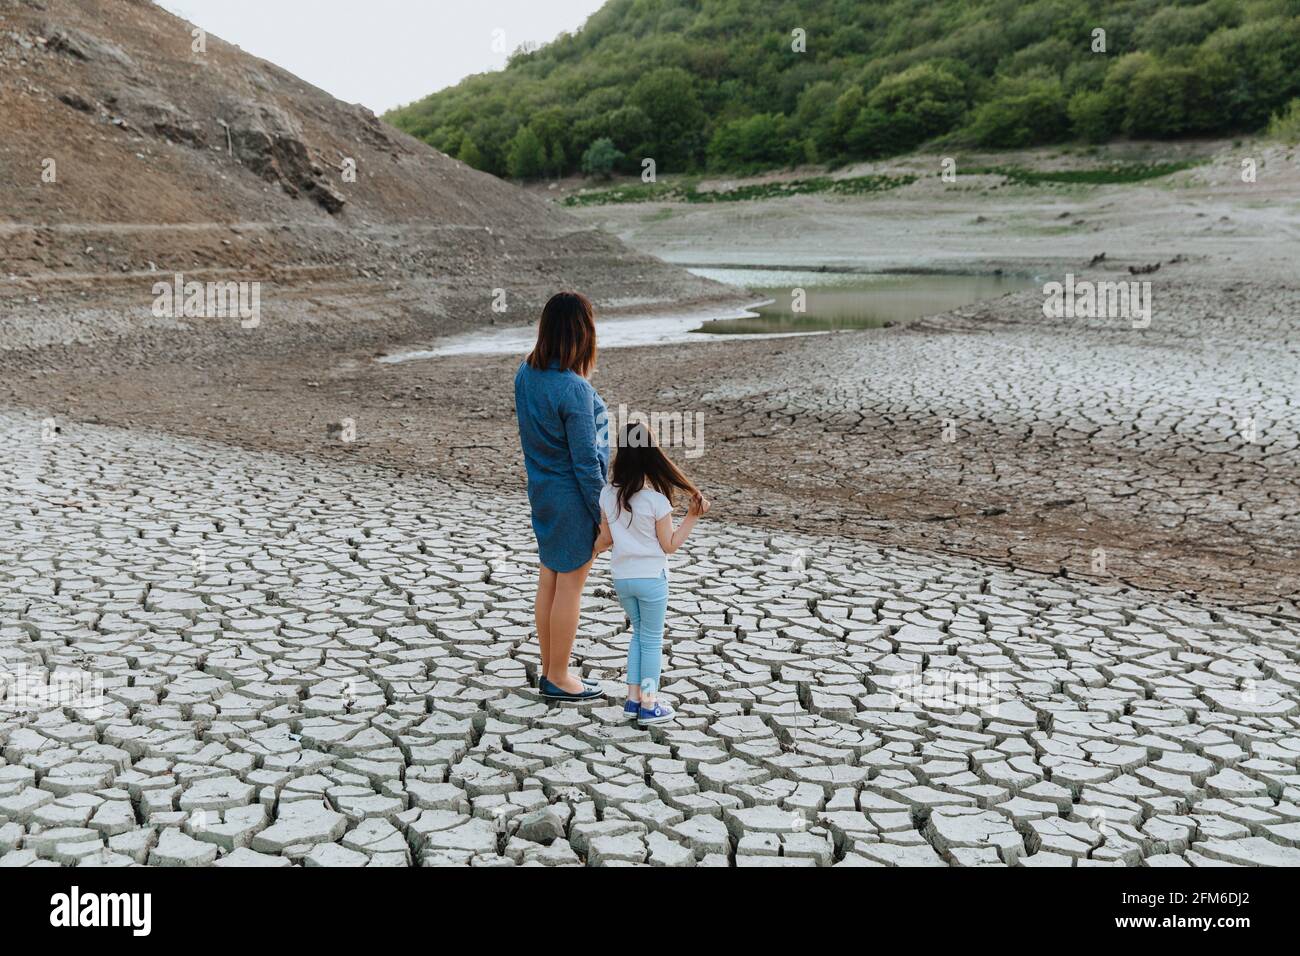 Eine Frau und ein Mädchen stehen Hand in Hand auf trockenem, rissem Boden und schauen auf den See, der austrocknet. Globale Erwärmung. Stockfoto